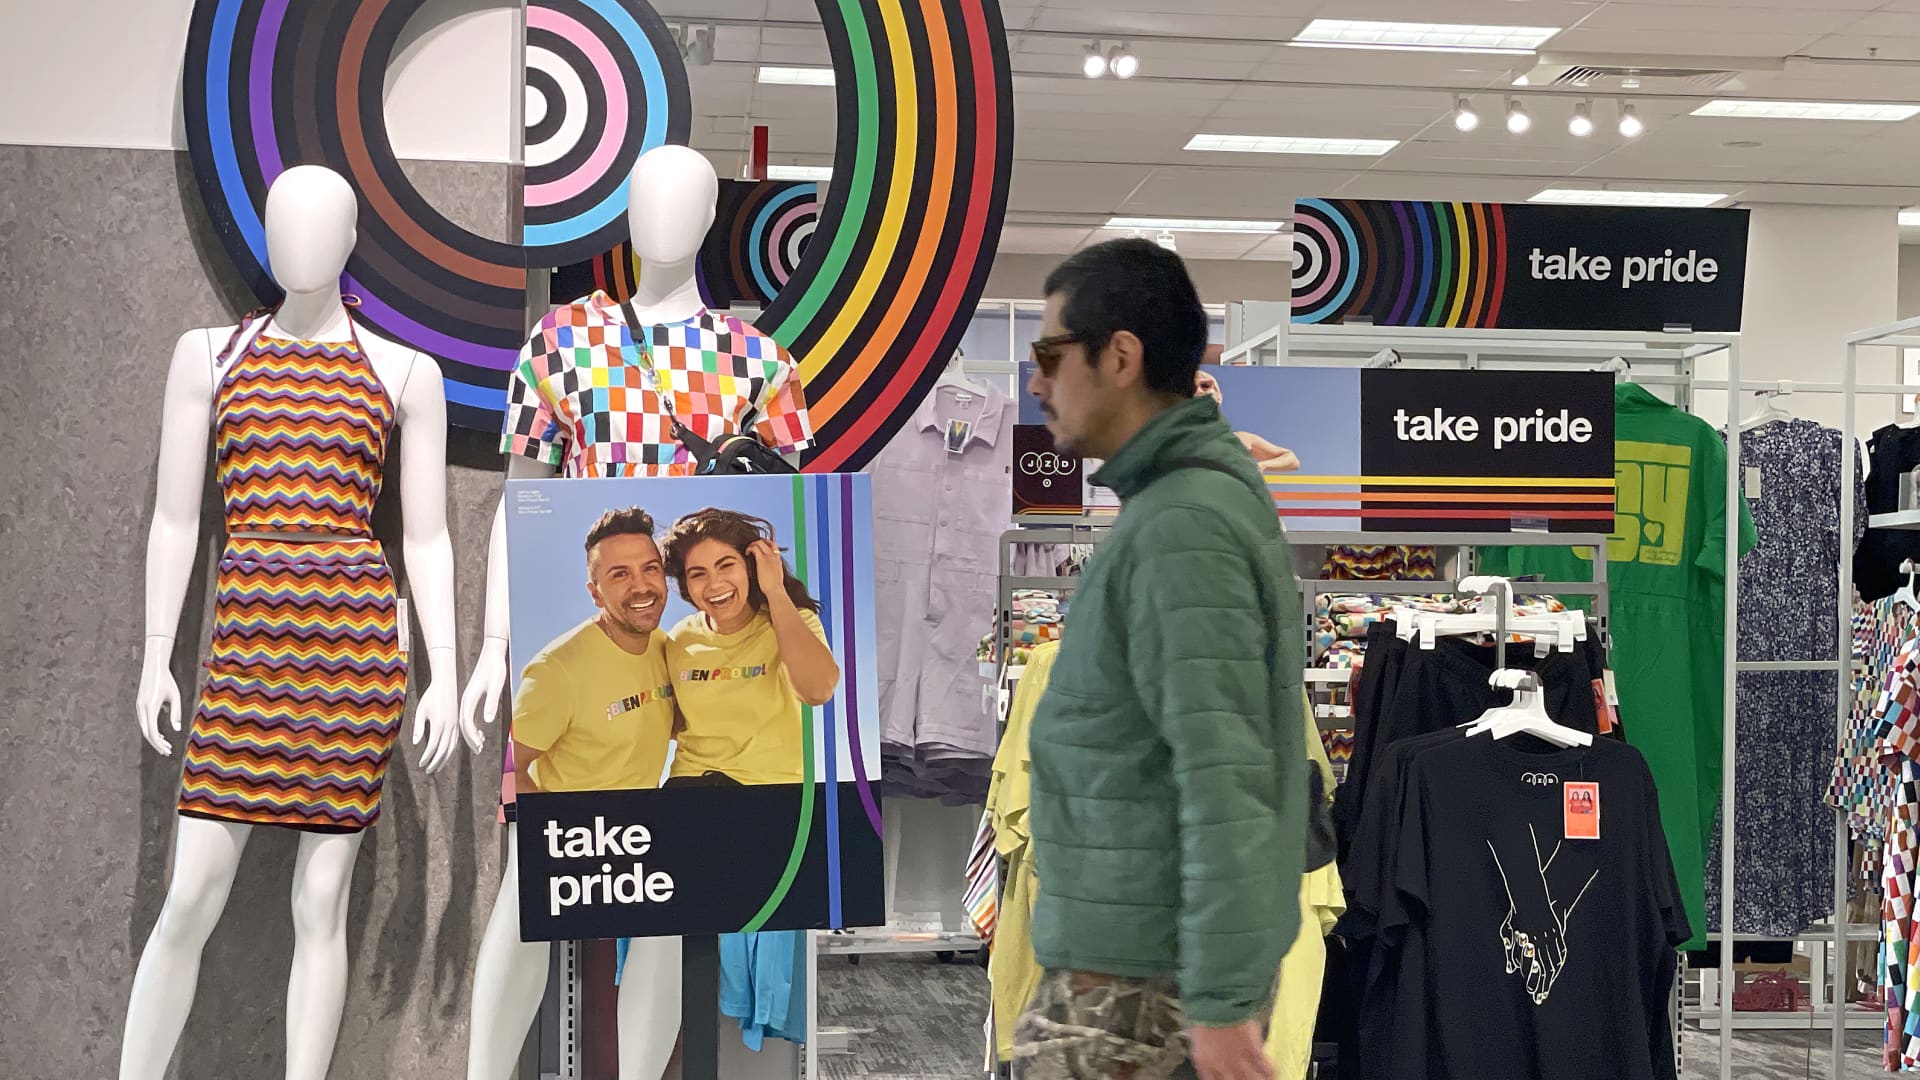 Target says Pleasure assortment will seem in ‘select’ merchants, cuts LGBTQ apparel for kids